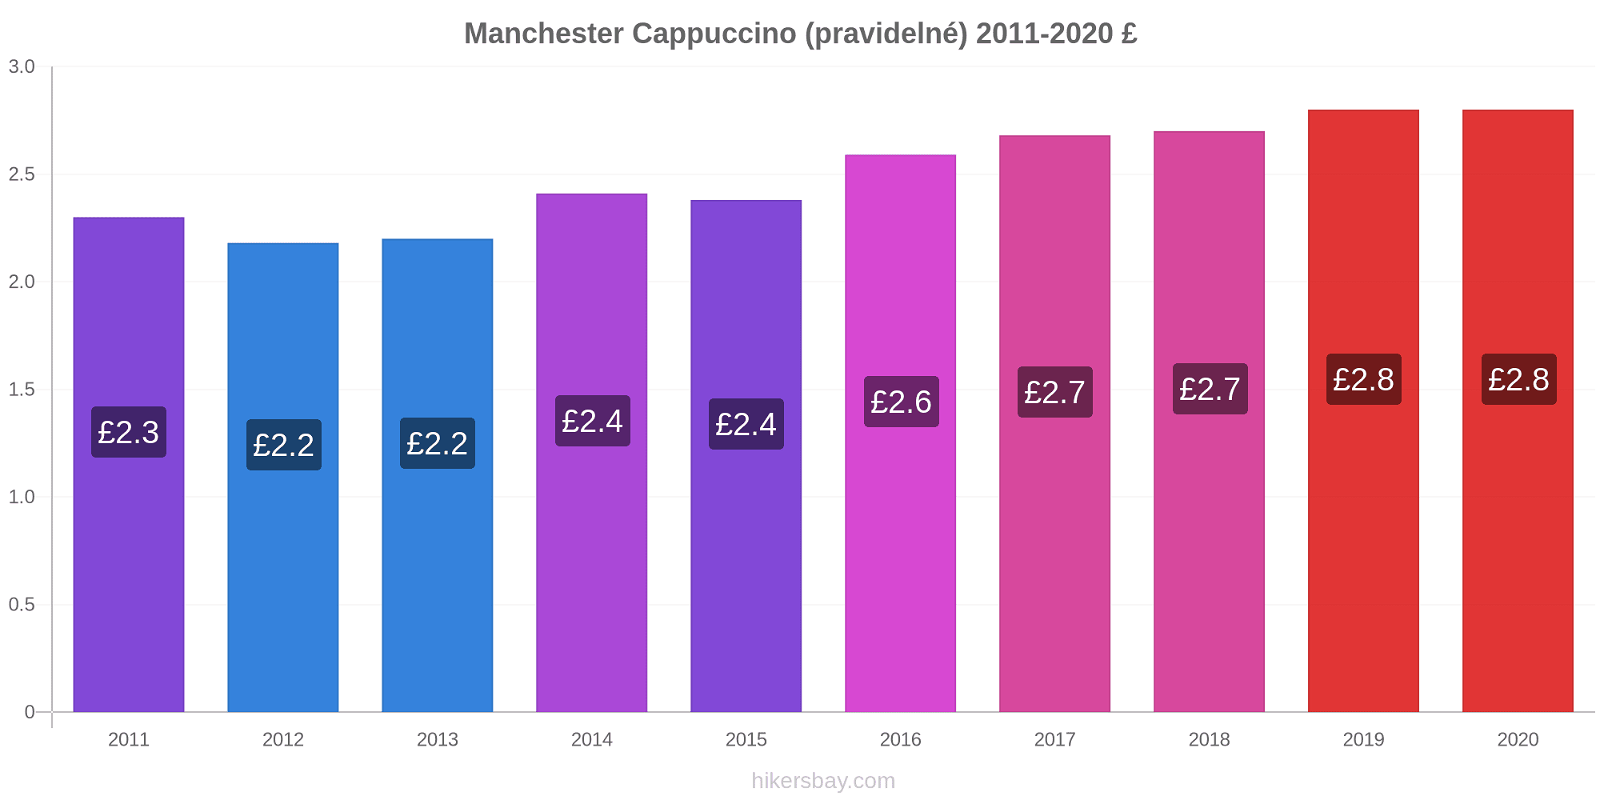 Manchester změny cen Cappuccino (pravidelné) hikersbay.com